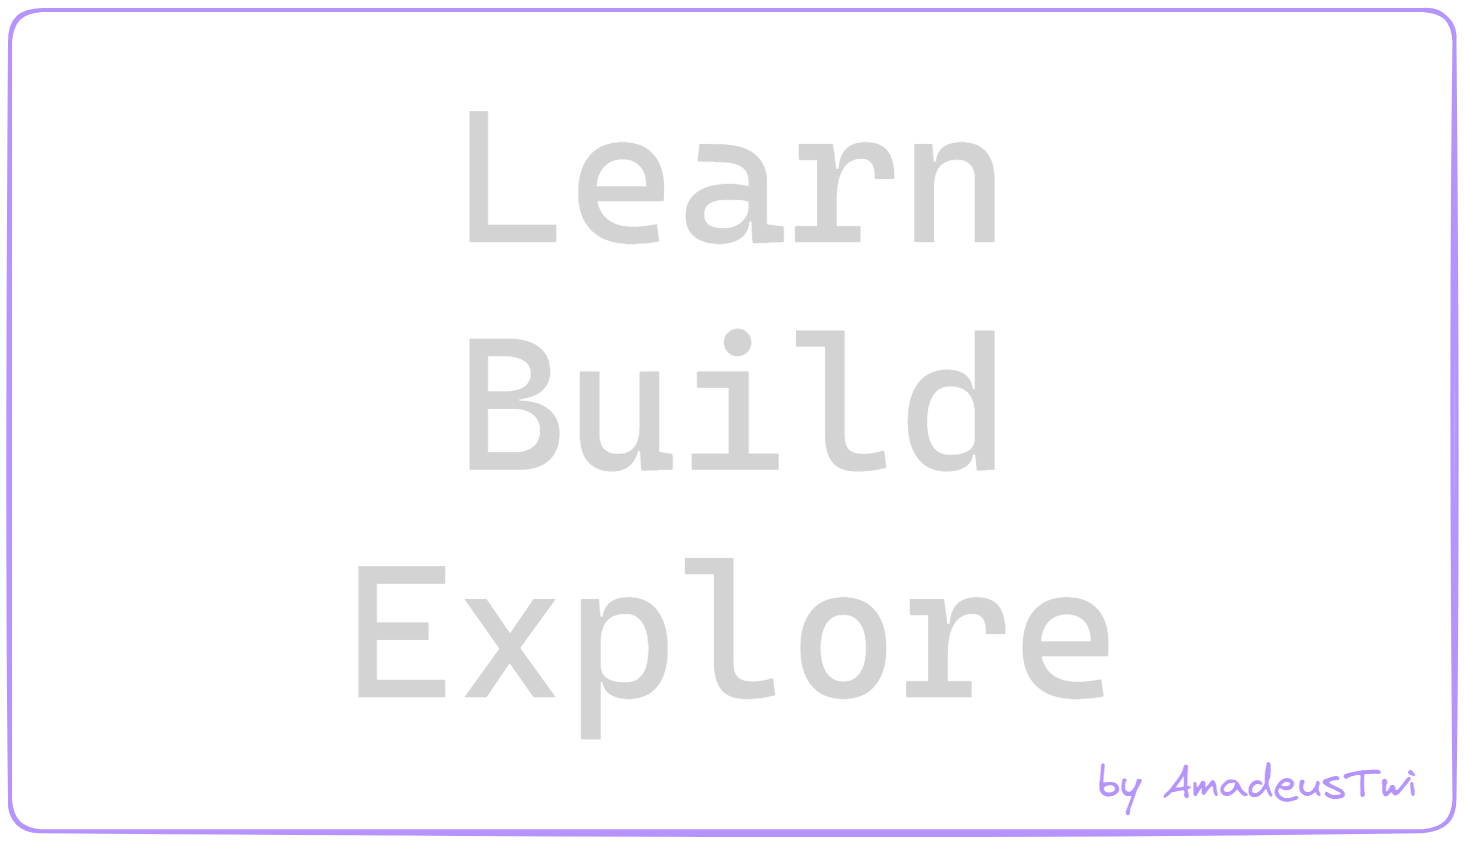 Learn. Build. Explore motto.